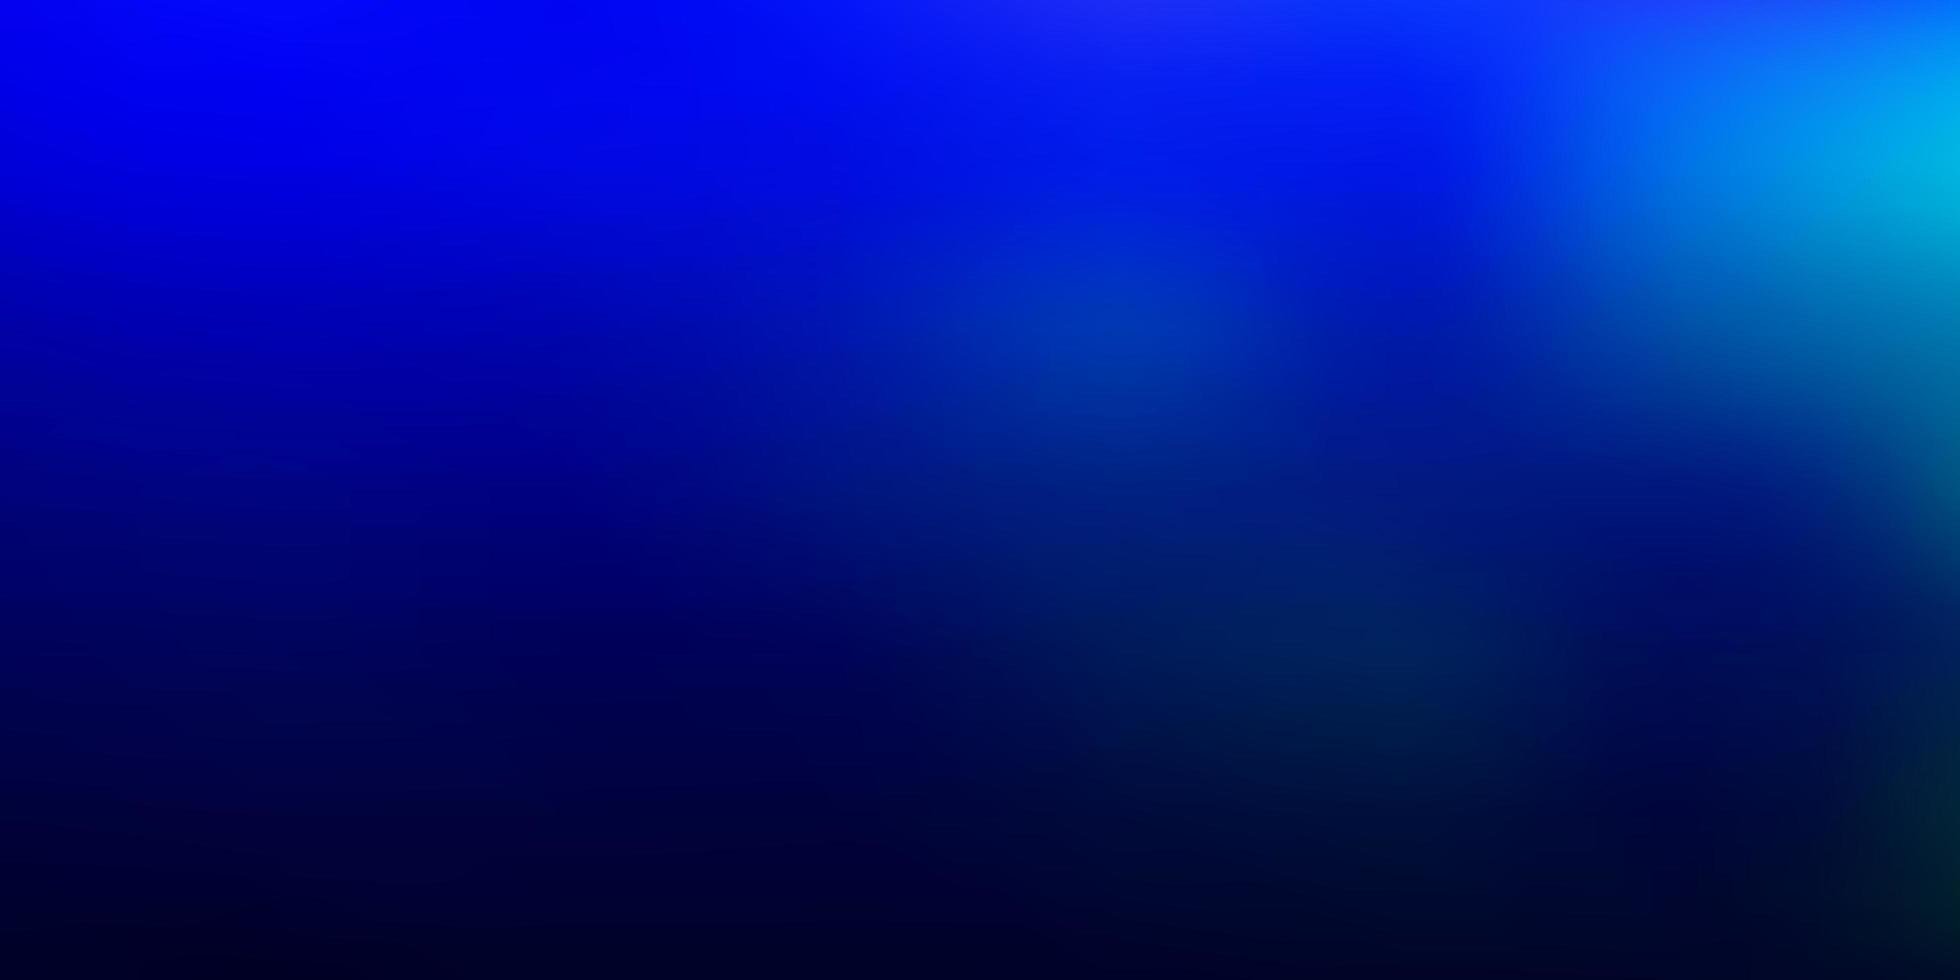 sfondo sfocato vettoriale blu chiaro.